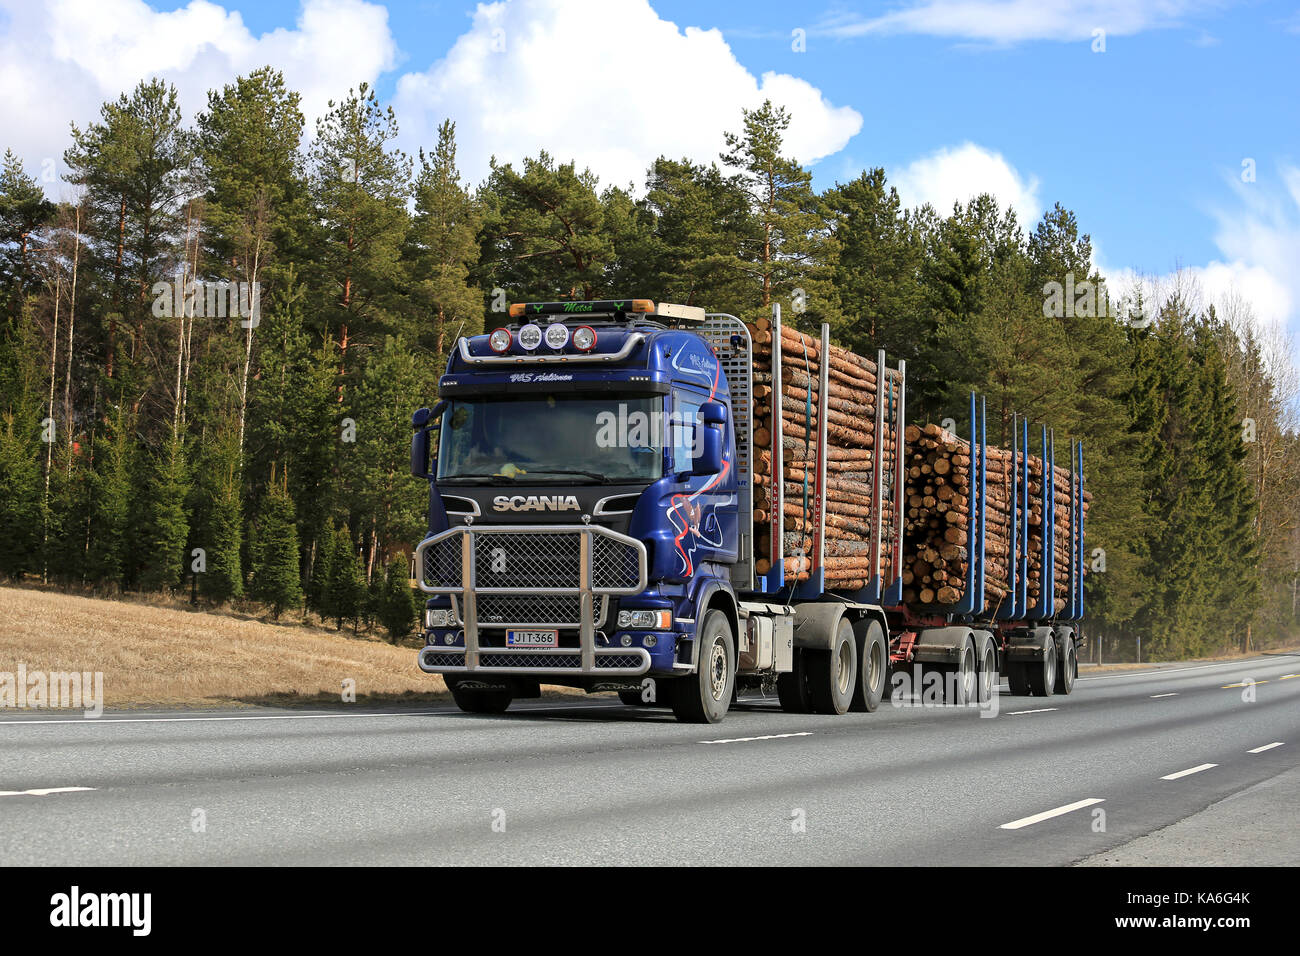 Jokioinen, Finlandia - 23 de abril de 2017: azul scania Camión de registro de aaltonen transporta madera de pino a lo largo de la autopista en un hermoso día de primavera. Foto de stock